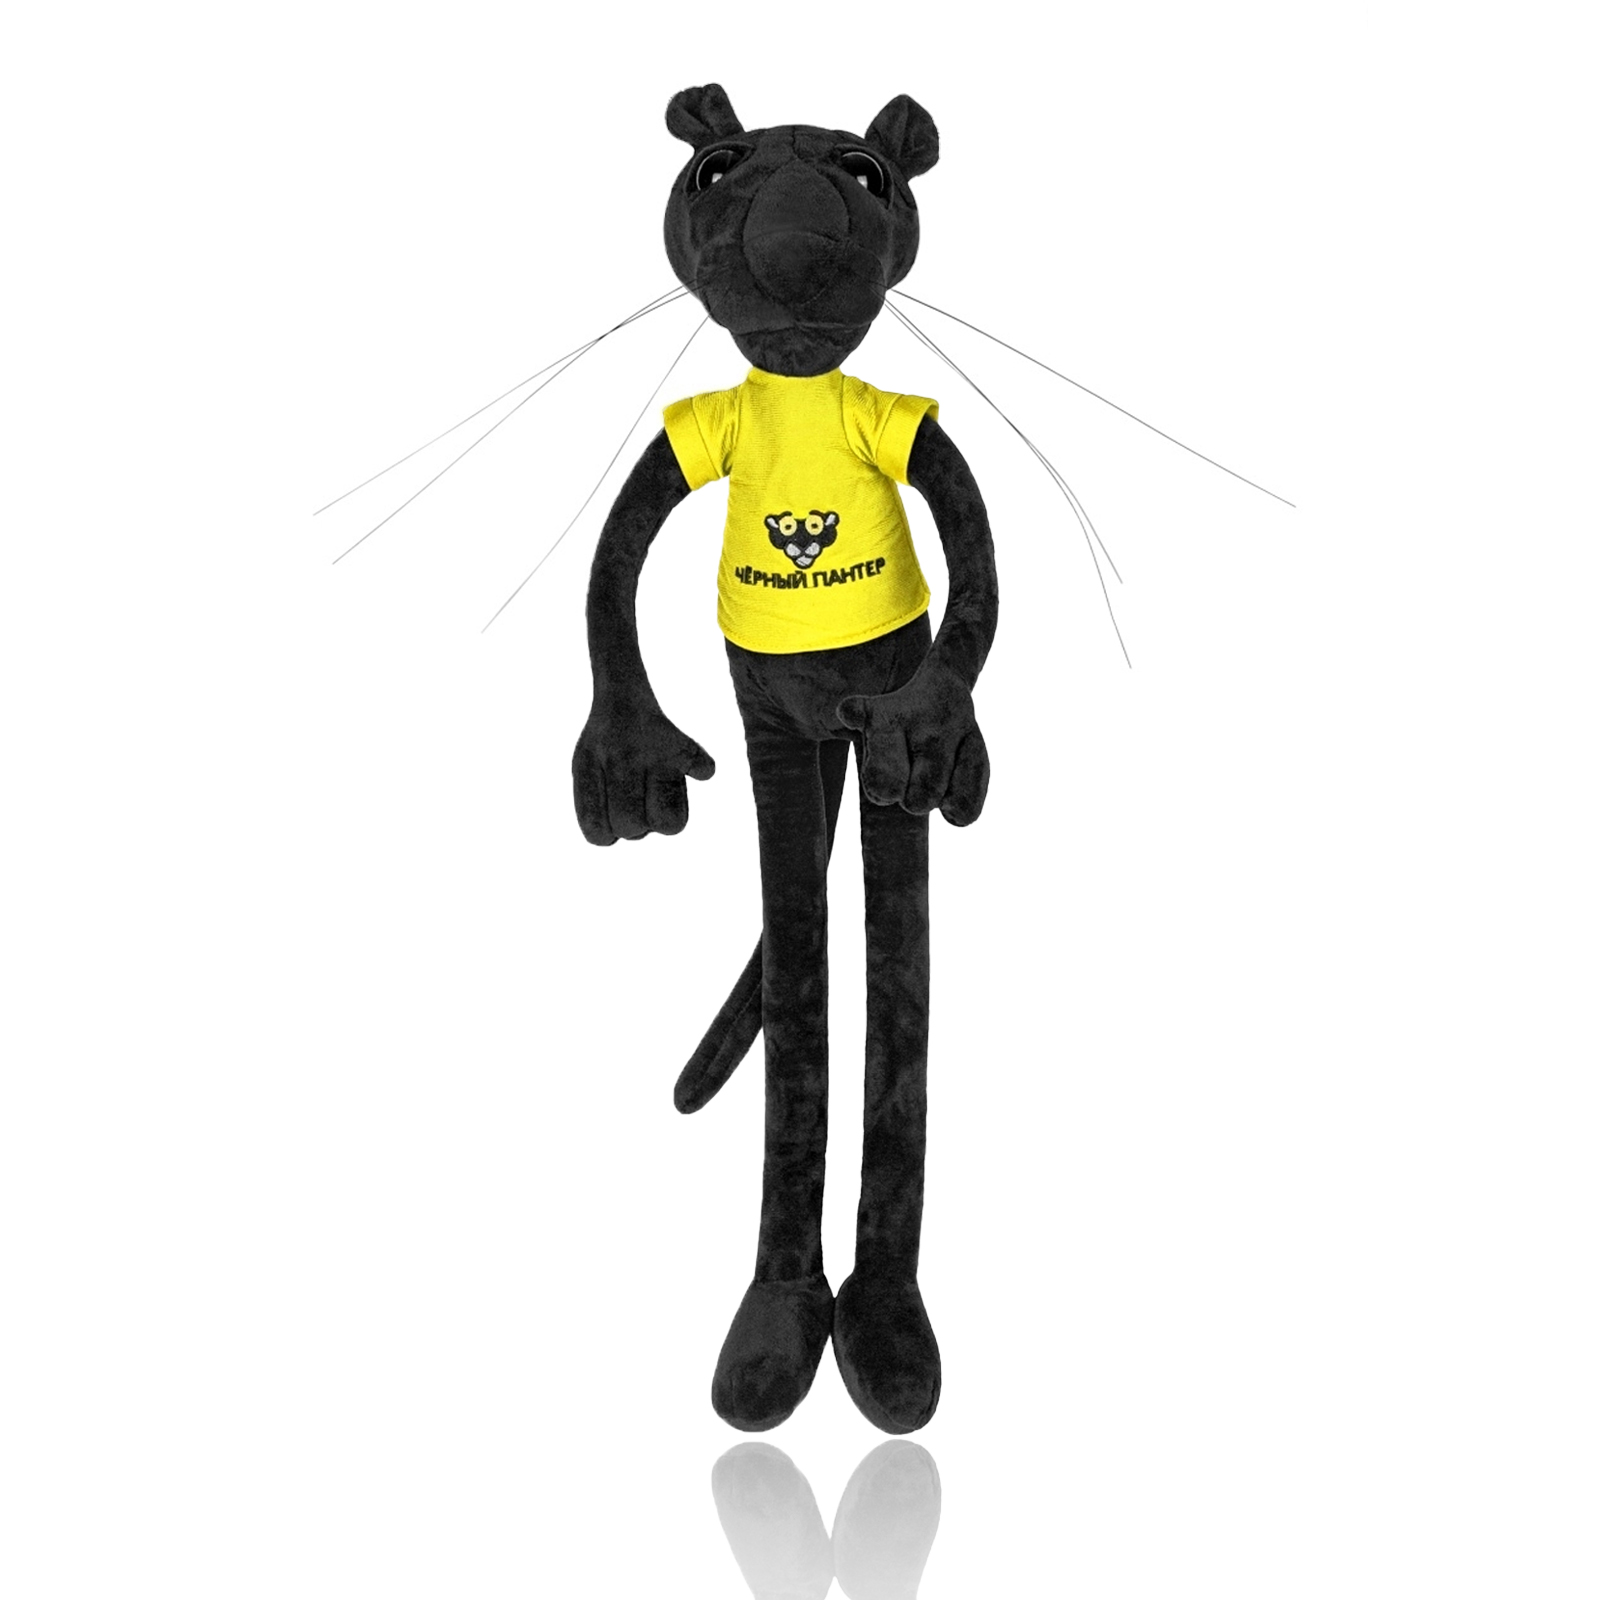 Мягкая игрушка Nano Shop Черная Пантера в желтой футболке, 100 см мягкая игрушка nano shop черная пантера в желтой футболке 100 см